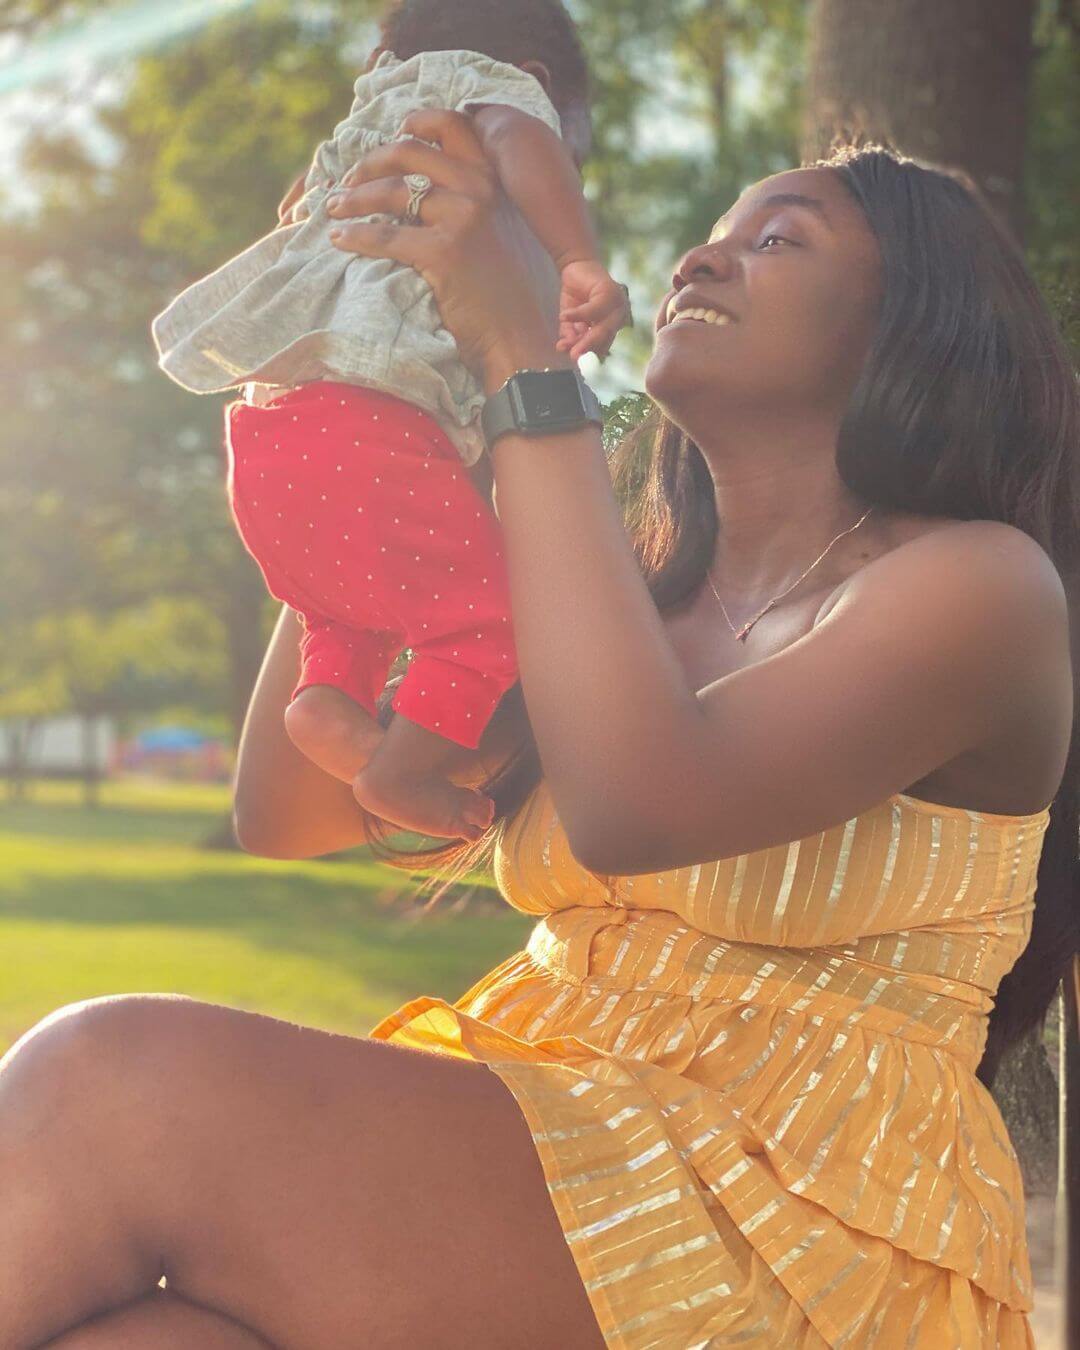 Simi and Adekunle Gold celebrate Baby Adejare as she turned one